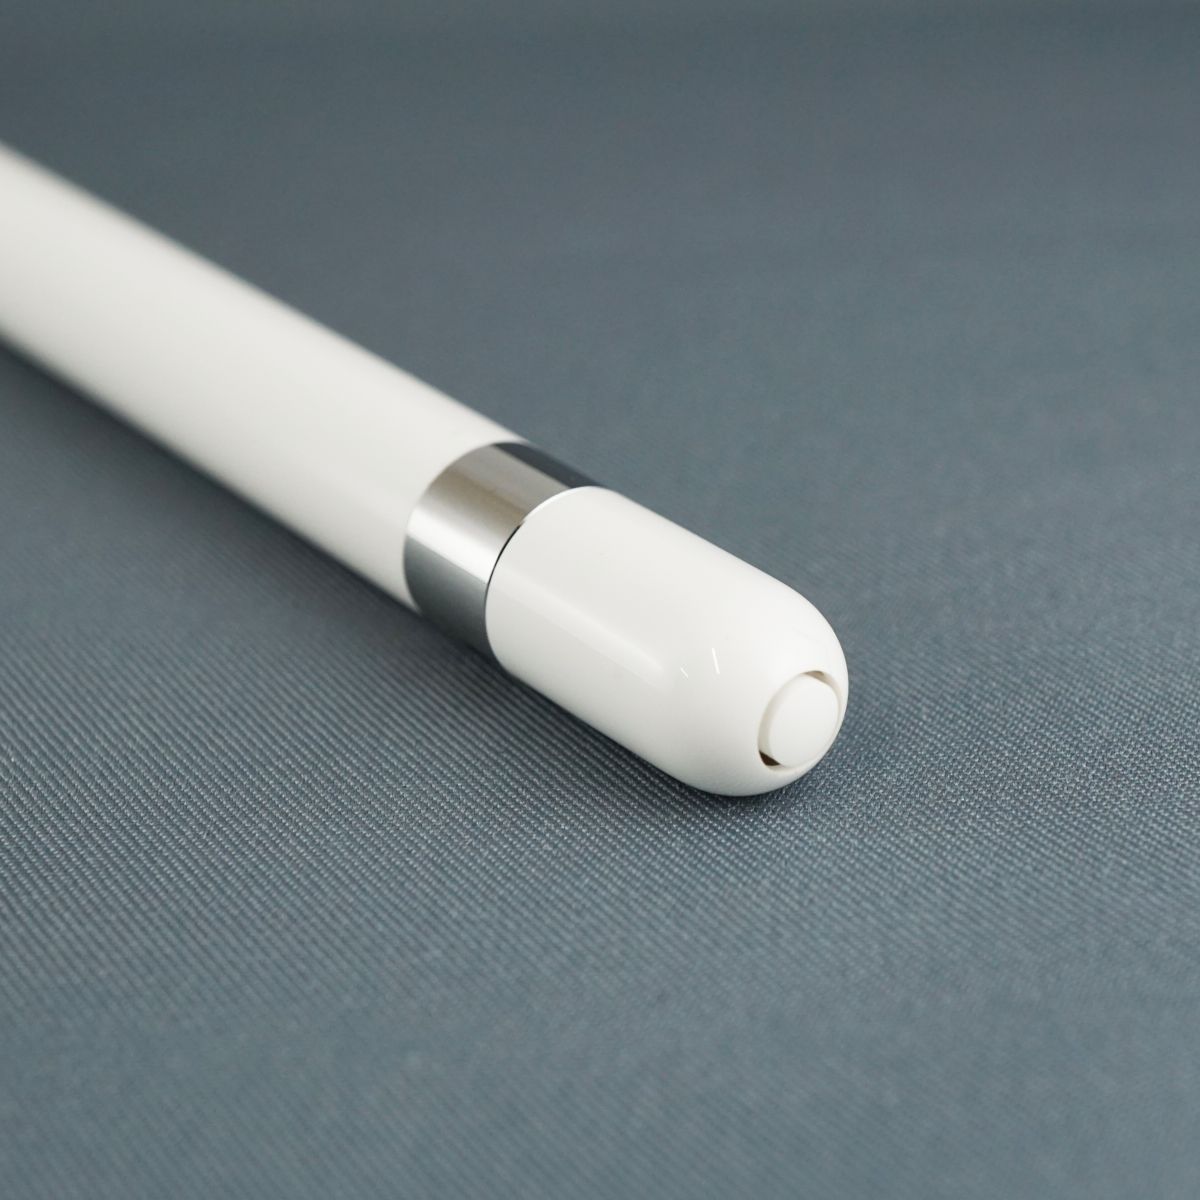 美品 完品 Apple Pencil 第1世代 アップル